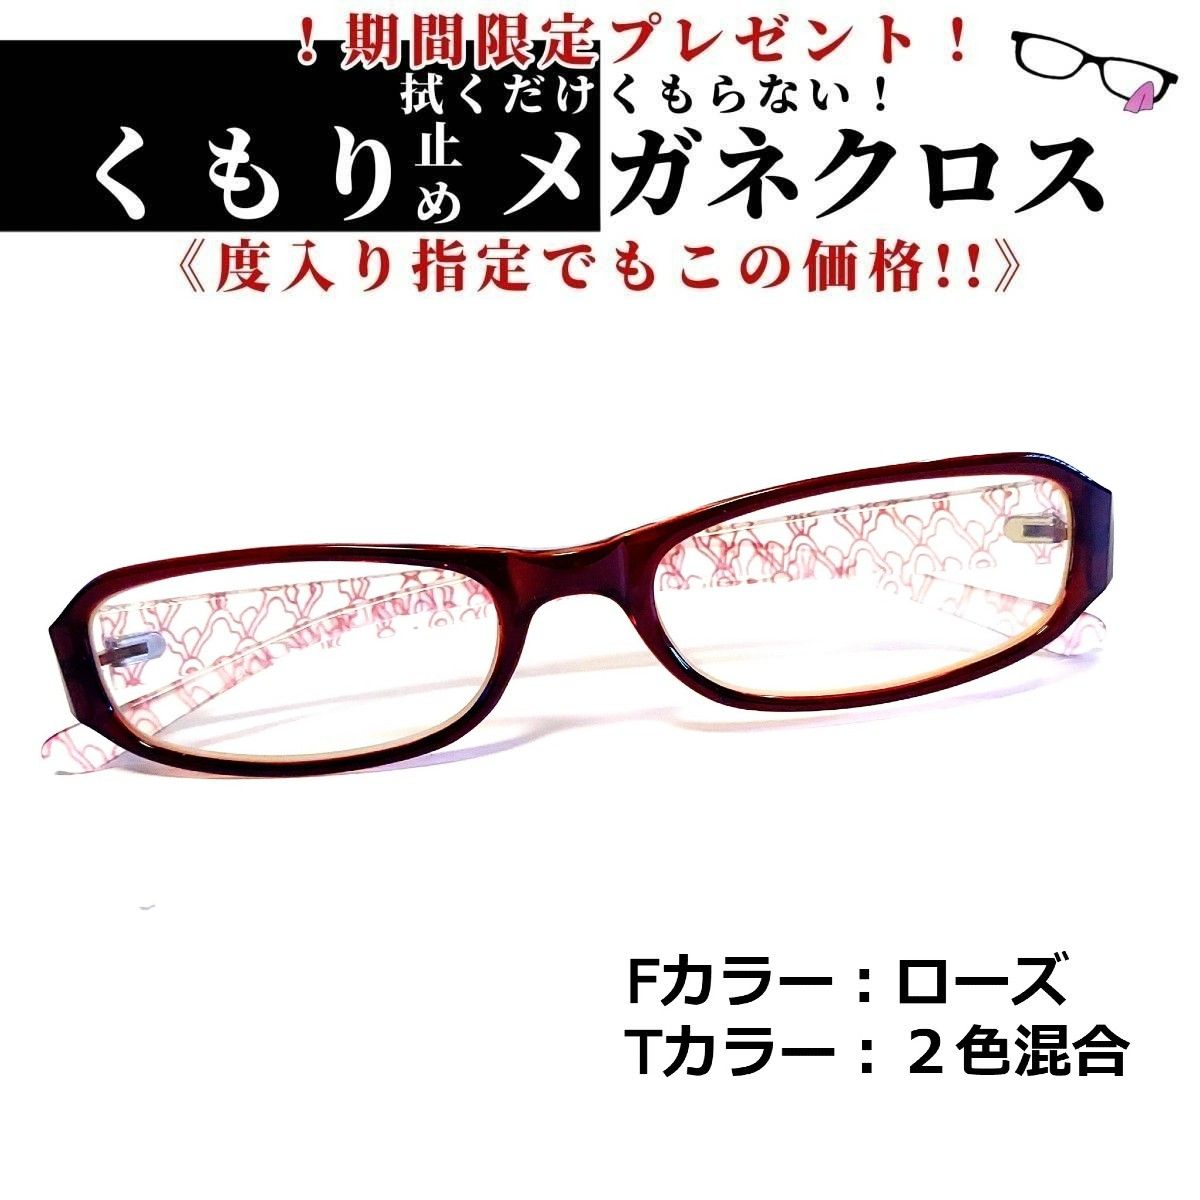 No.1568-メガネ ローズ・2色混合【フレームのみ価格】 - サングラス/メガネ